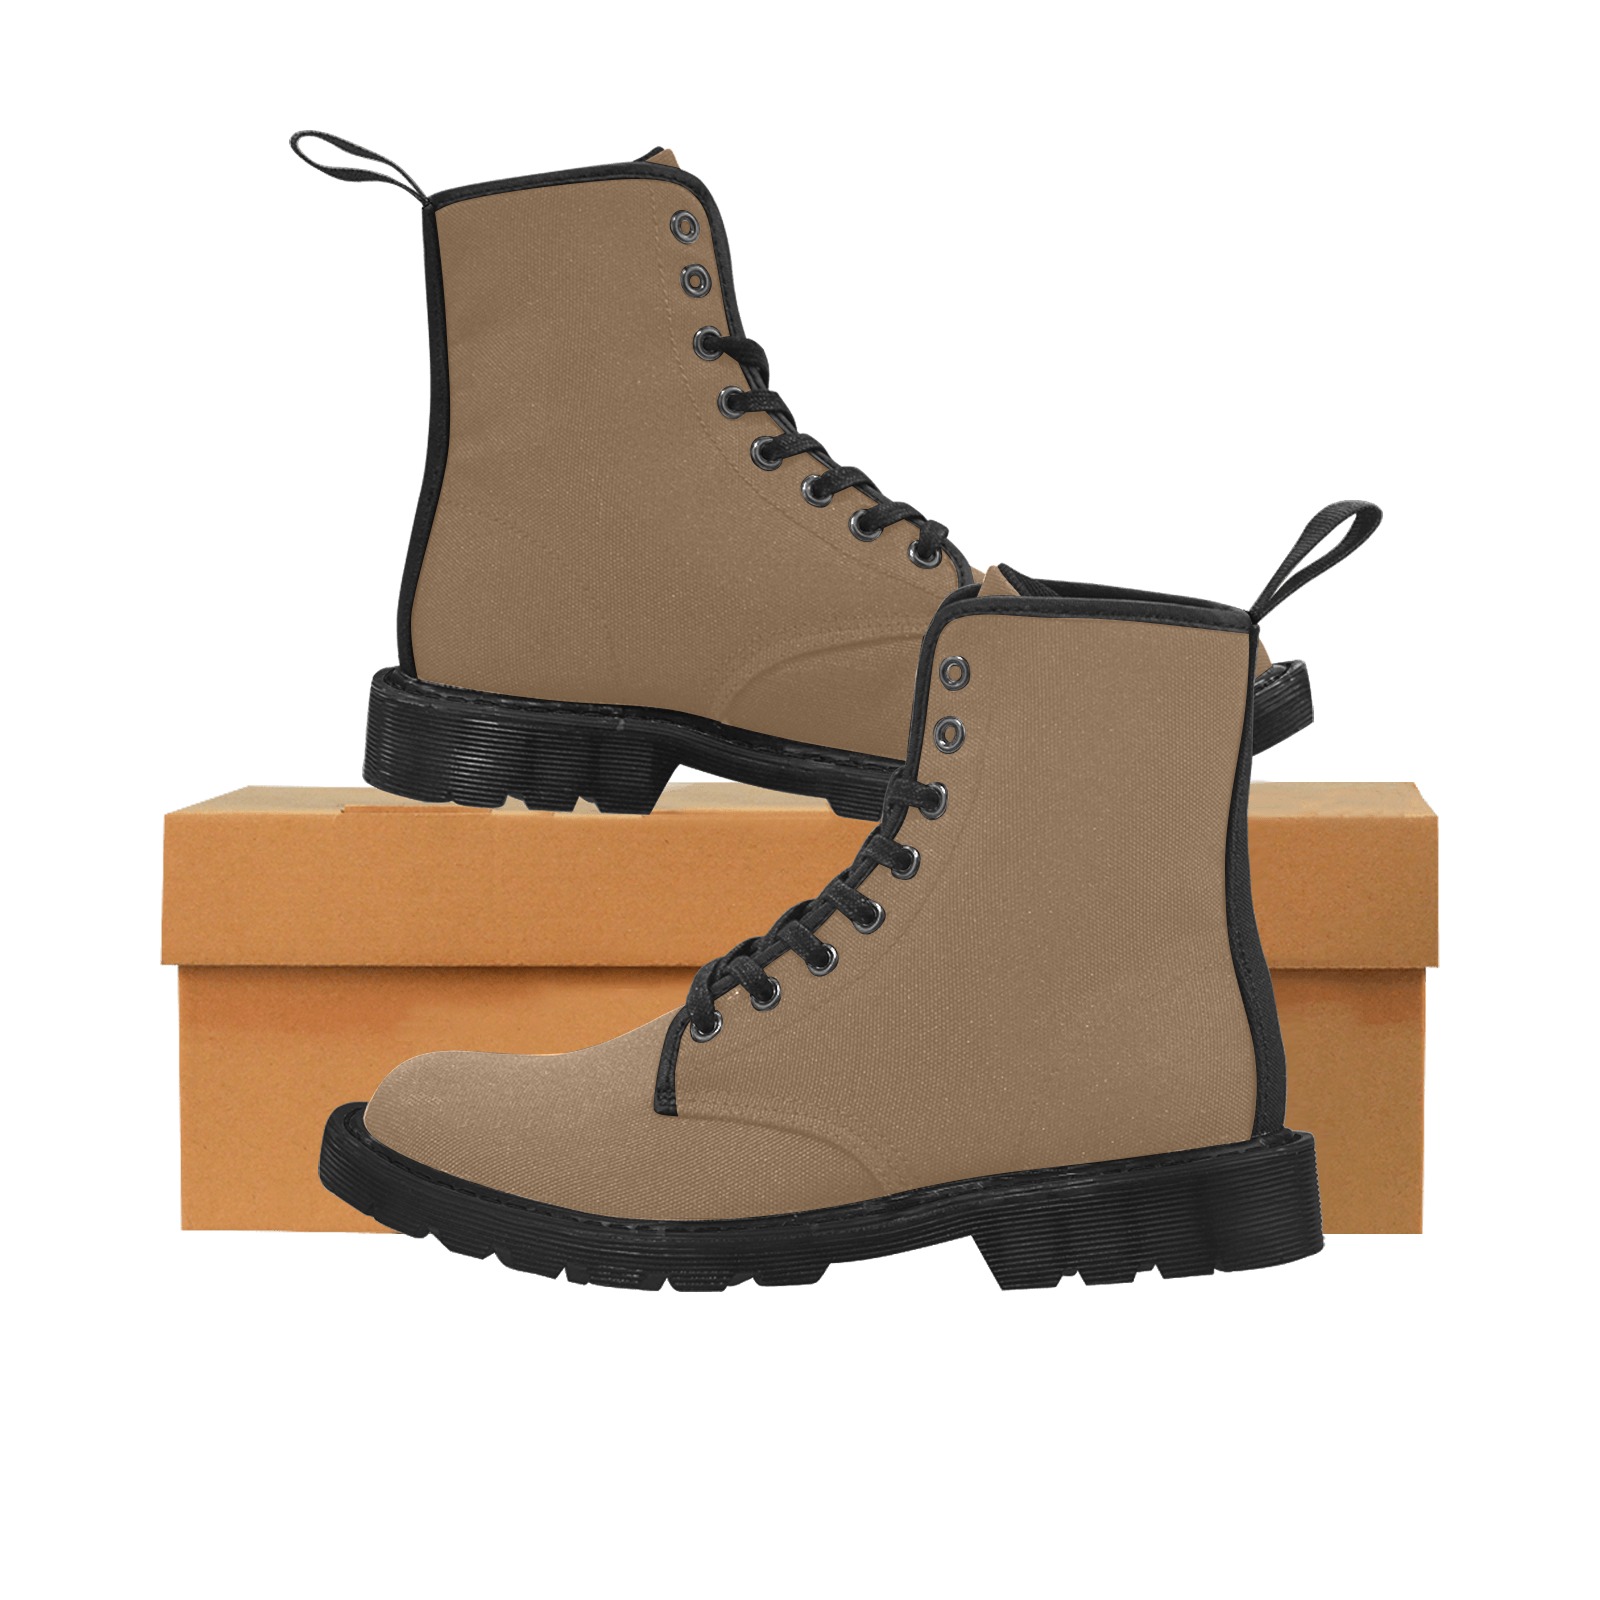 Brown Martin Boots for Men (Black) (Model 1203H)